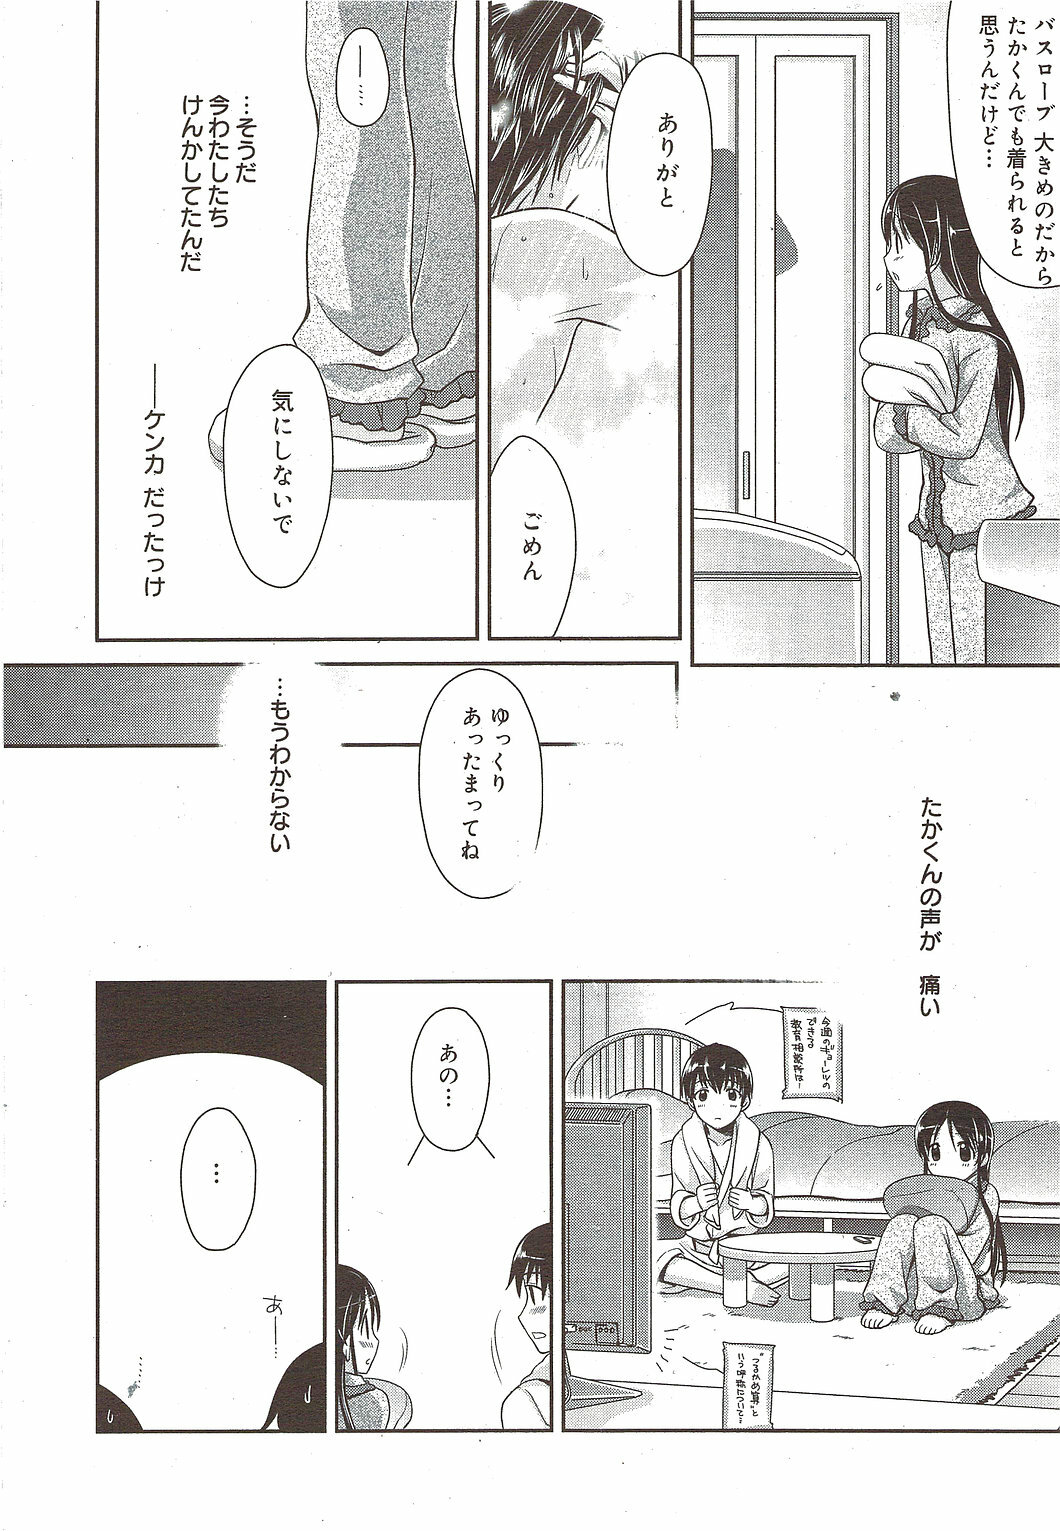 Manga Bangaichi 2010-01 page 26 full